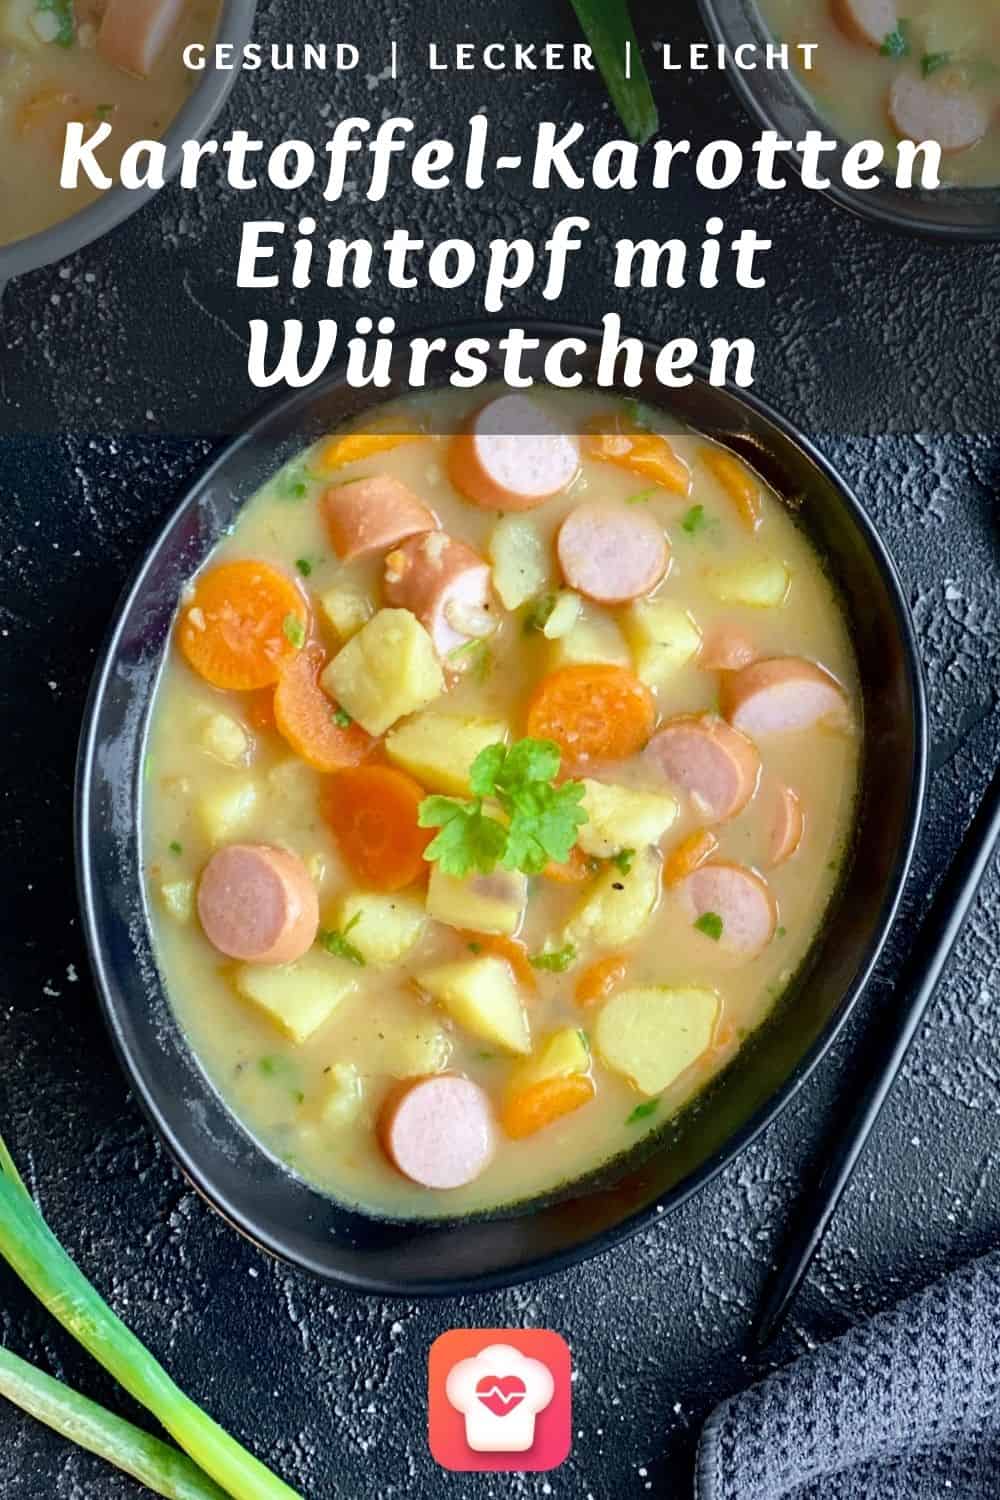 Kartoffel-Karotten Eintopf mit Würstchen - Deutsche Hausmannskost